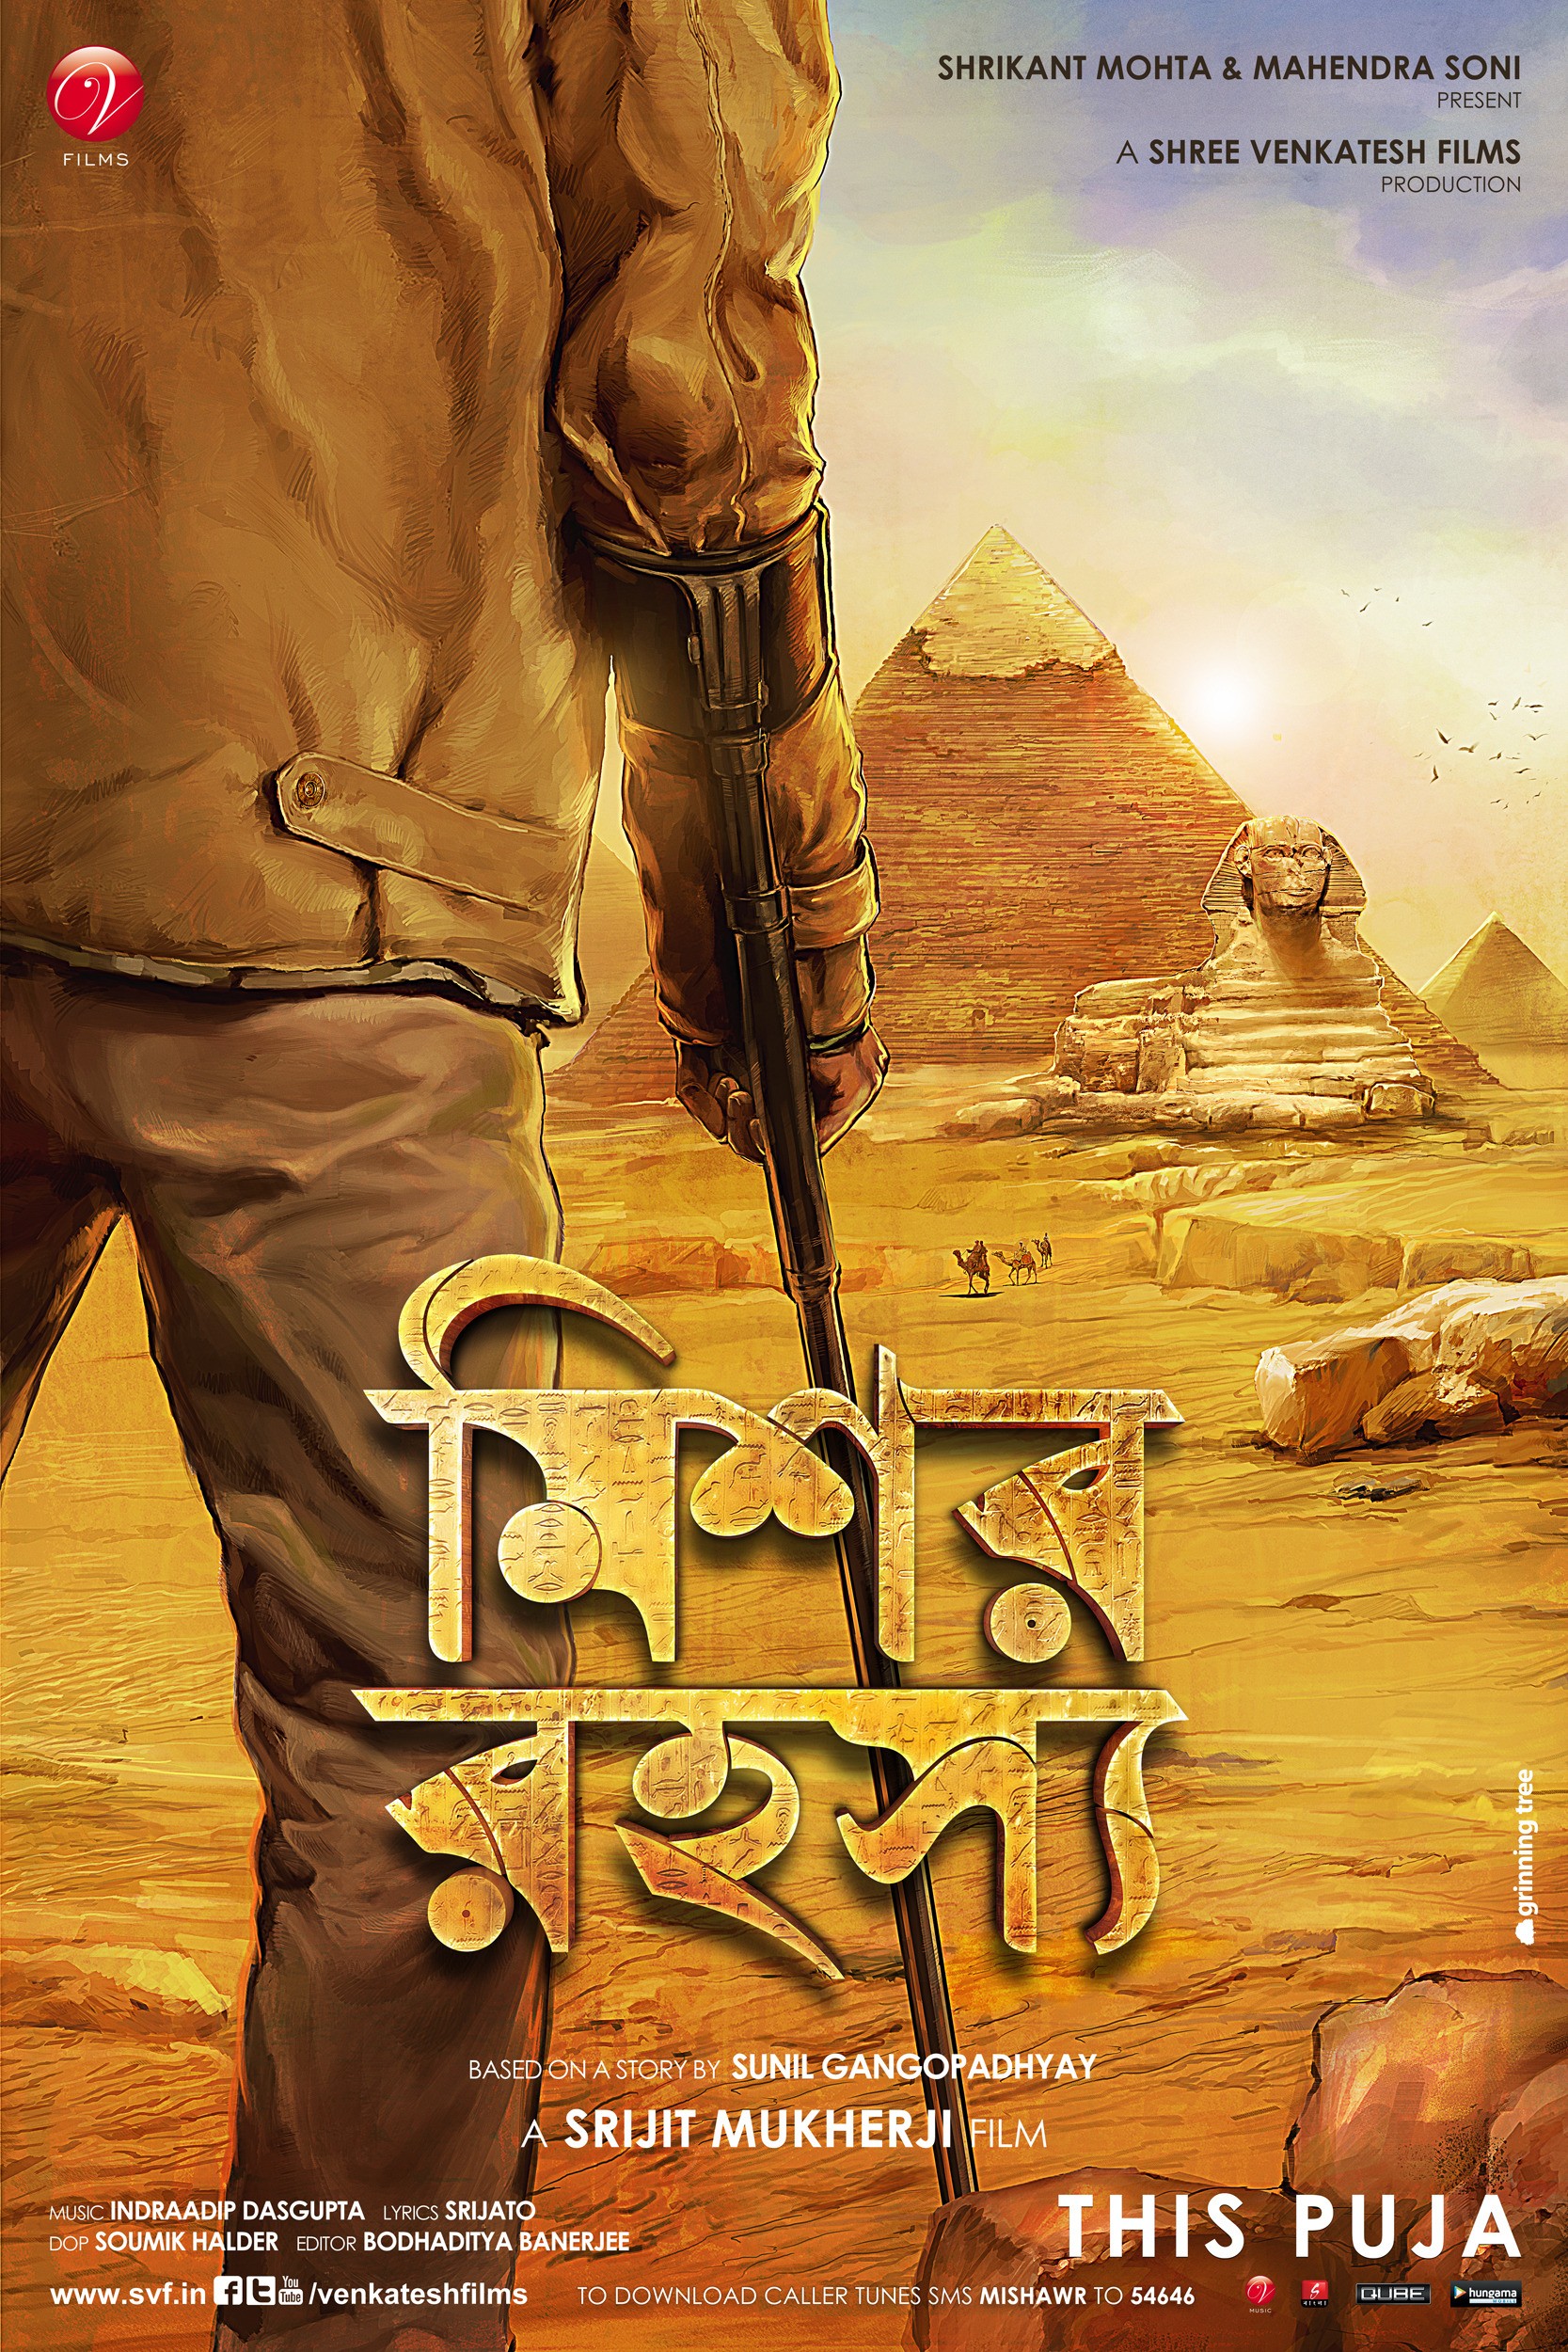 Mega Sized Movie Poster Image for Mishawr Rawhoshyo (#3 of 6)